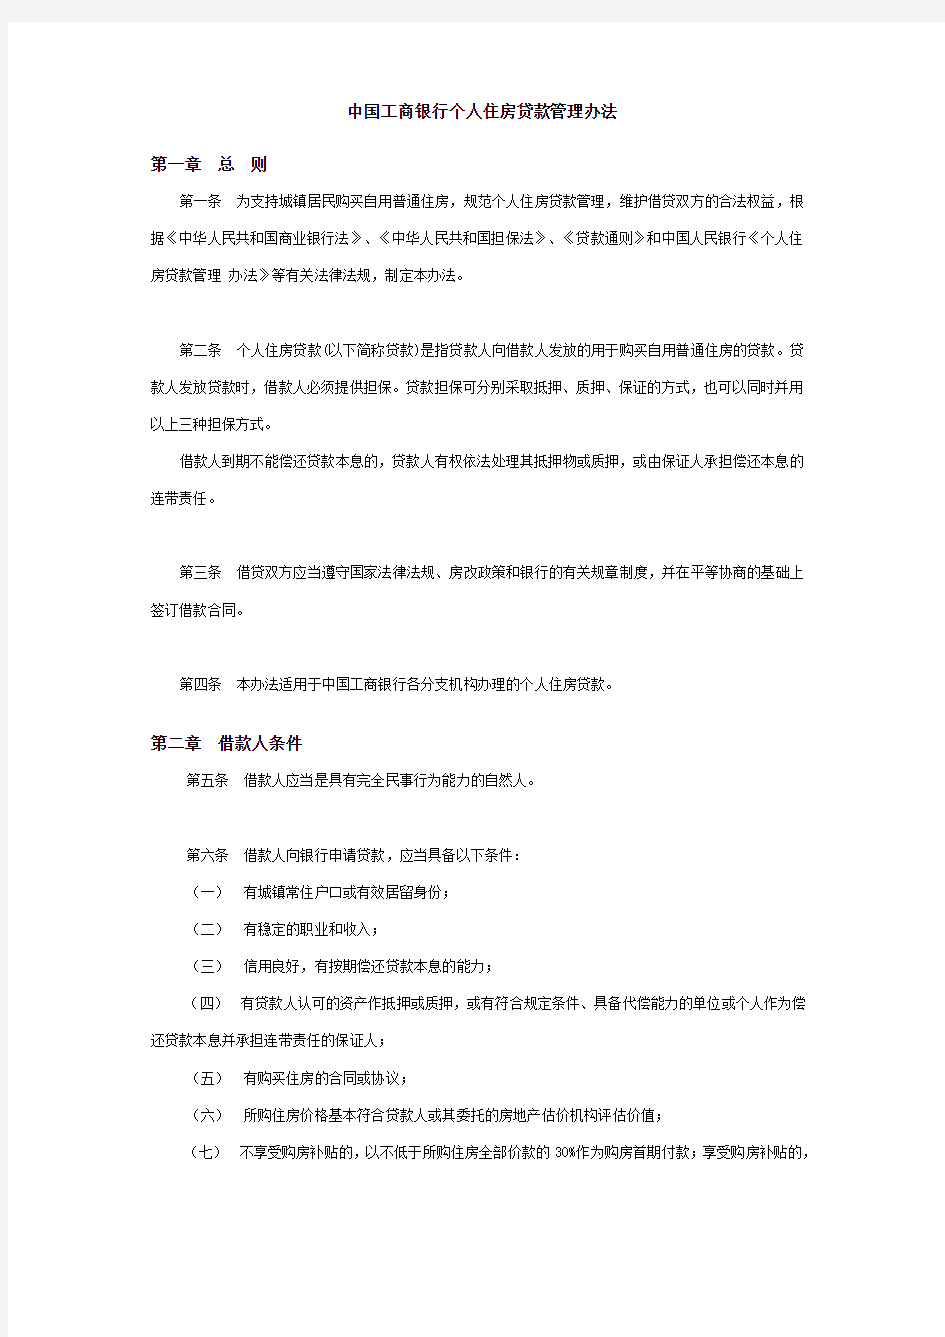 中国工商银行个人住房贷款管理办法